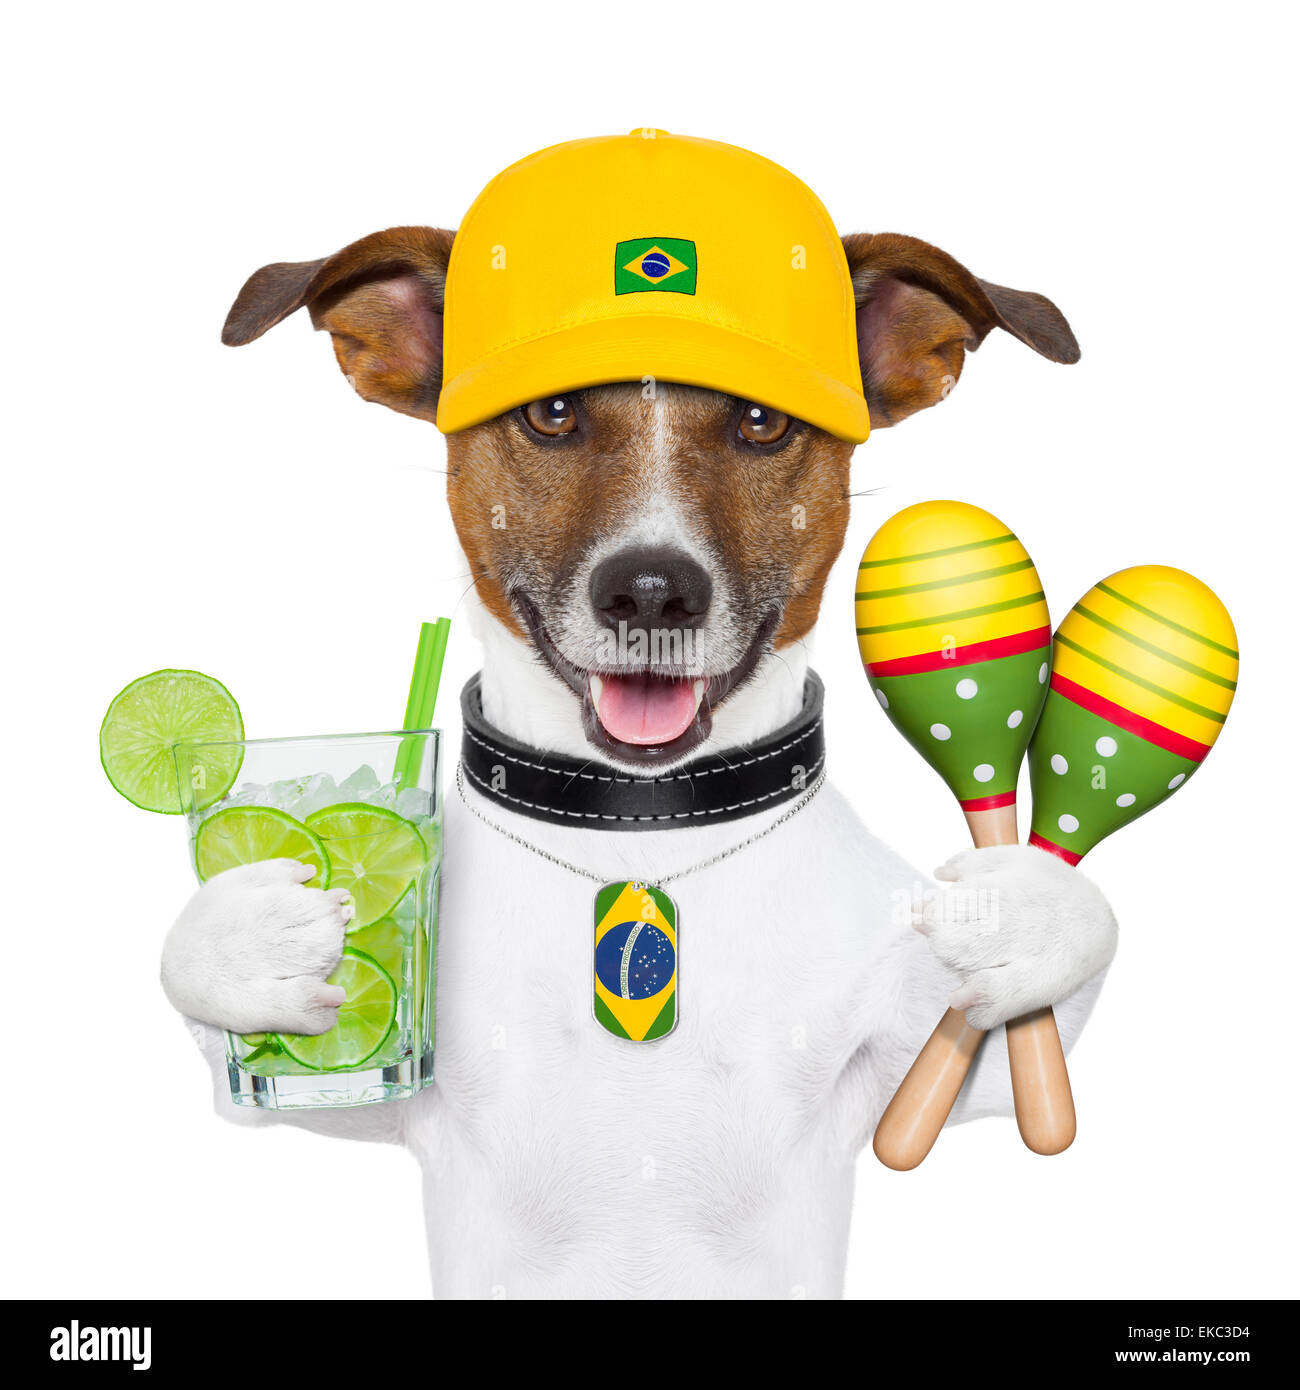 Brazilian Hot Dog, Black Background Stock Image - Image of brasil